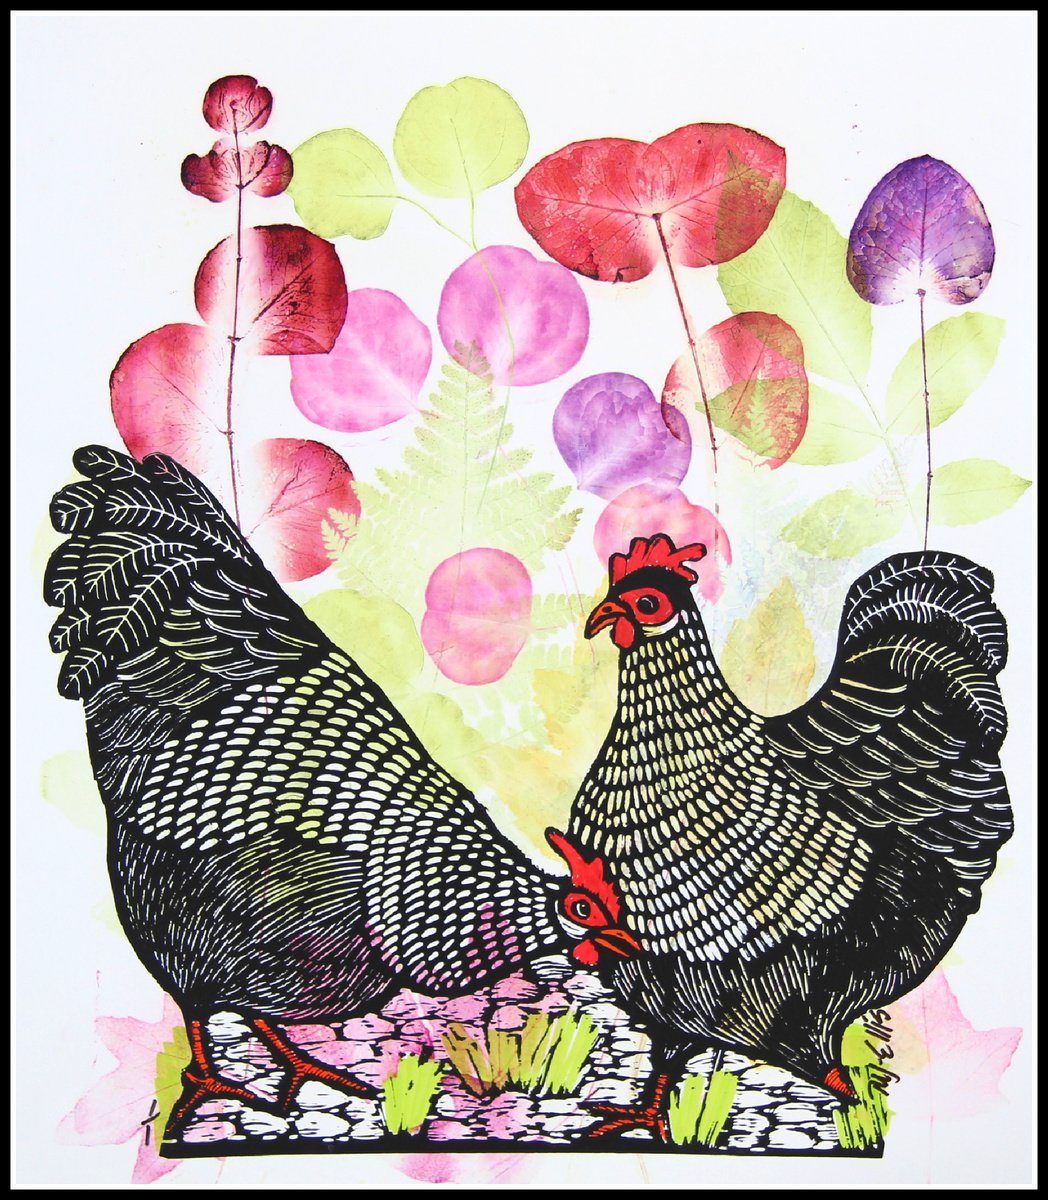 Free Range Chickens by Mariann Johansen-Ellis